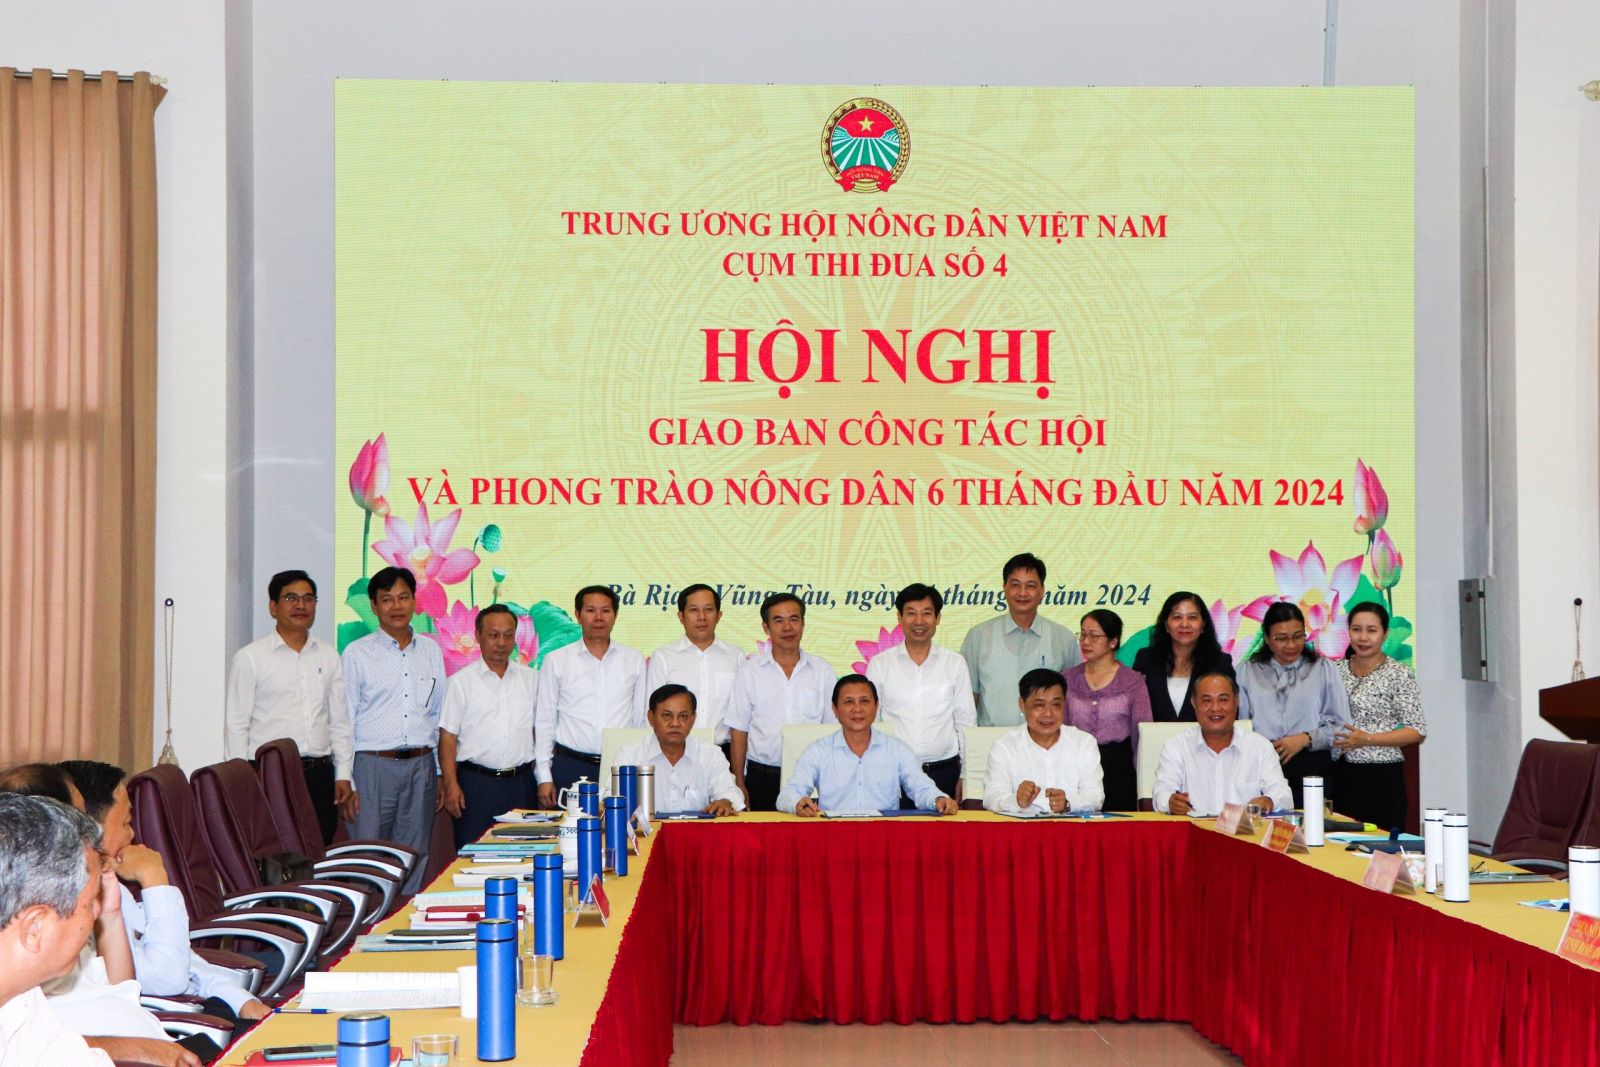 Phó Chủ tịch Hội NDVN Nguyễn Xuân Định chủ trì hội nghị giao ban Cụm thi đua số 4 tổ chức tại Bà Rịa-Vũng Tàu- Ảnh 1.